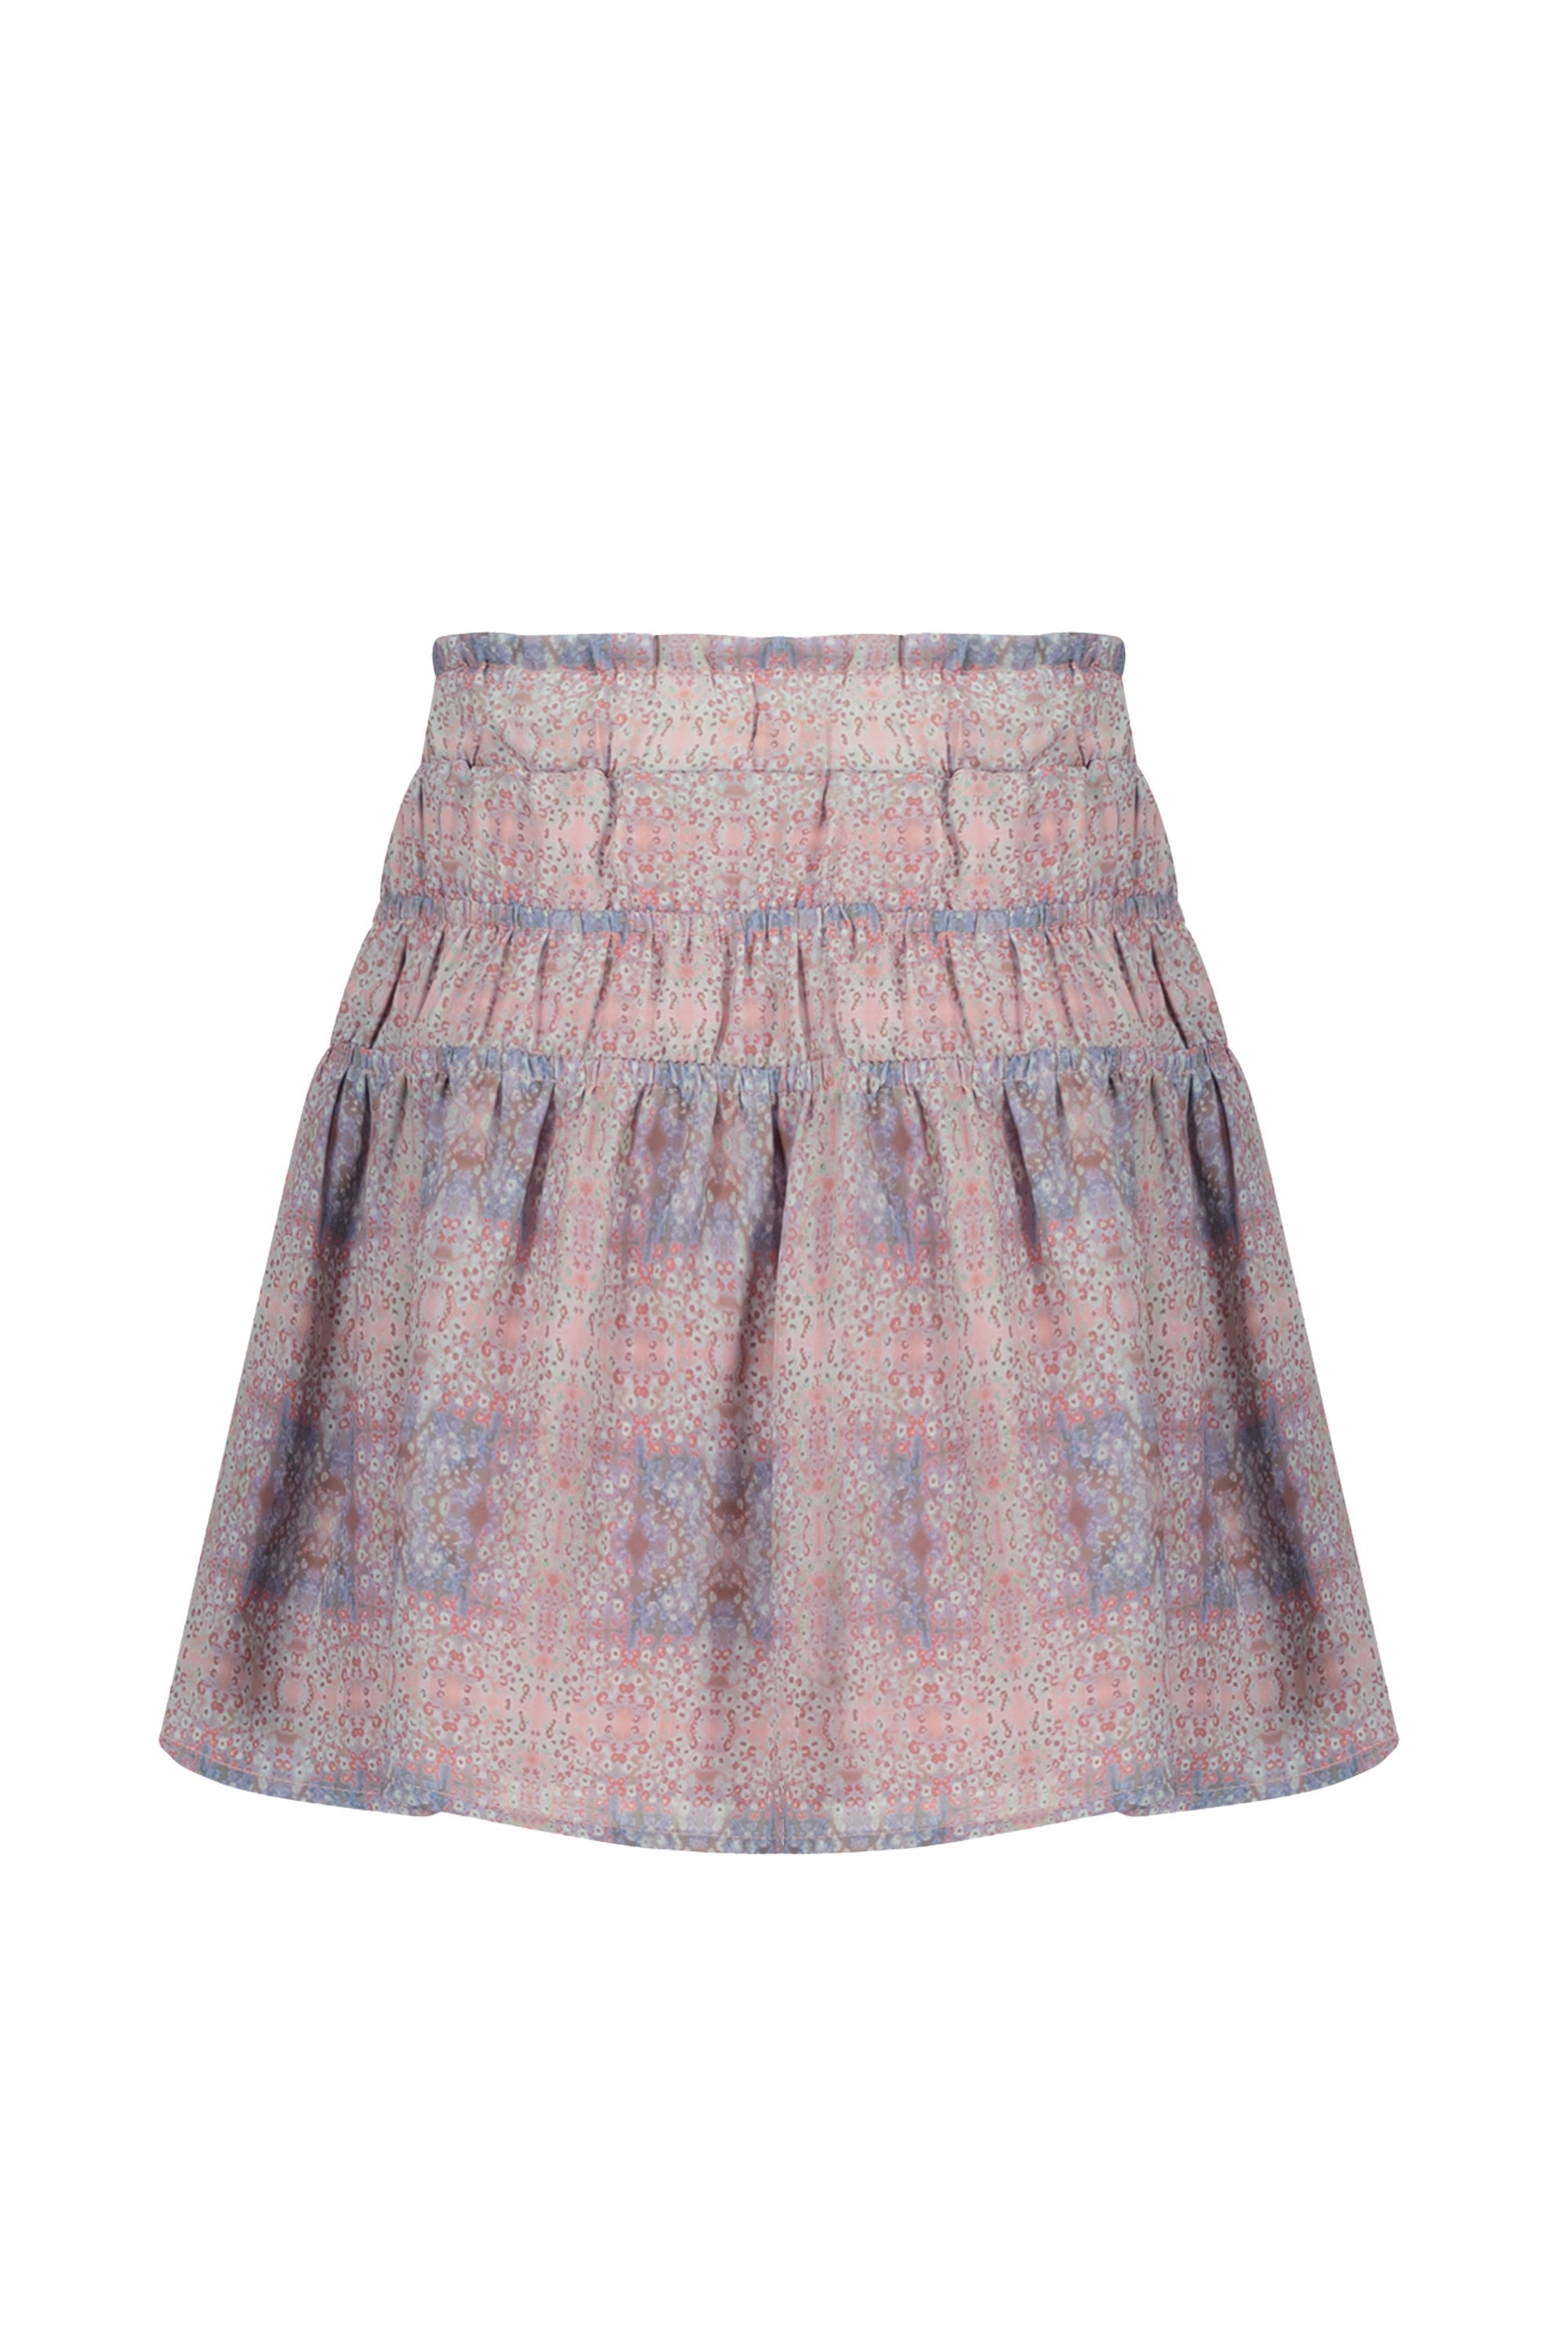 Meisjes NellieB short skirt with elasticated details van NoNo in de kleur Rosy Ginger in maat 134-140.